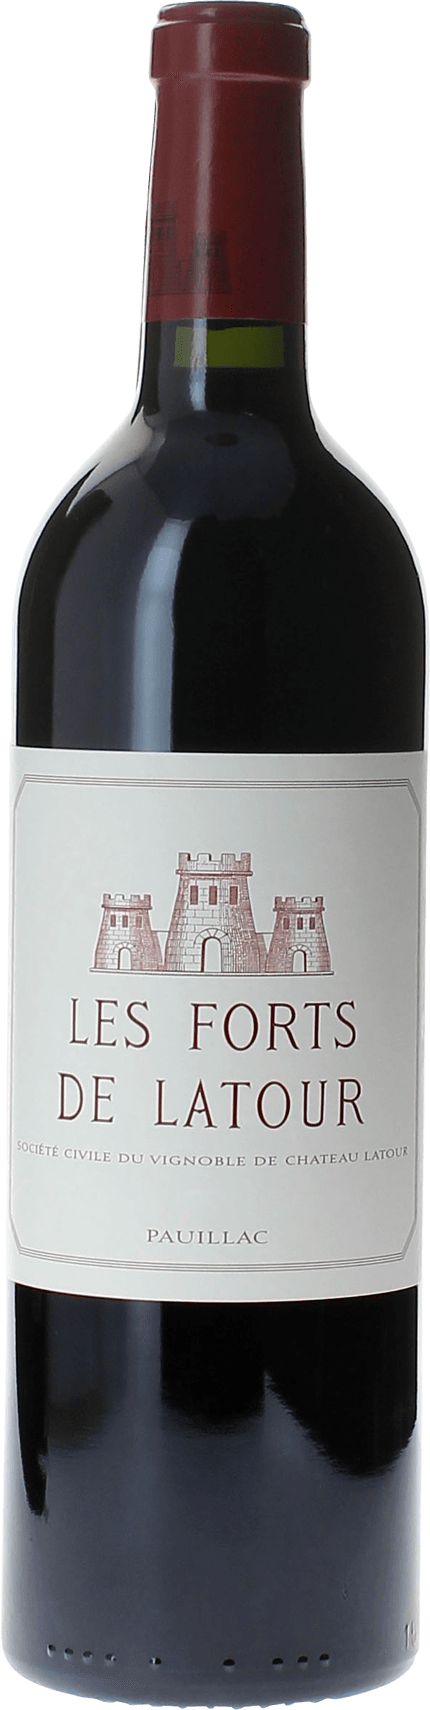 Les forts de latour 1983 2me vin de LATOUR Pauillac, Bordeaux rouge